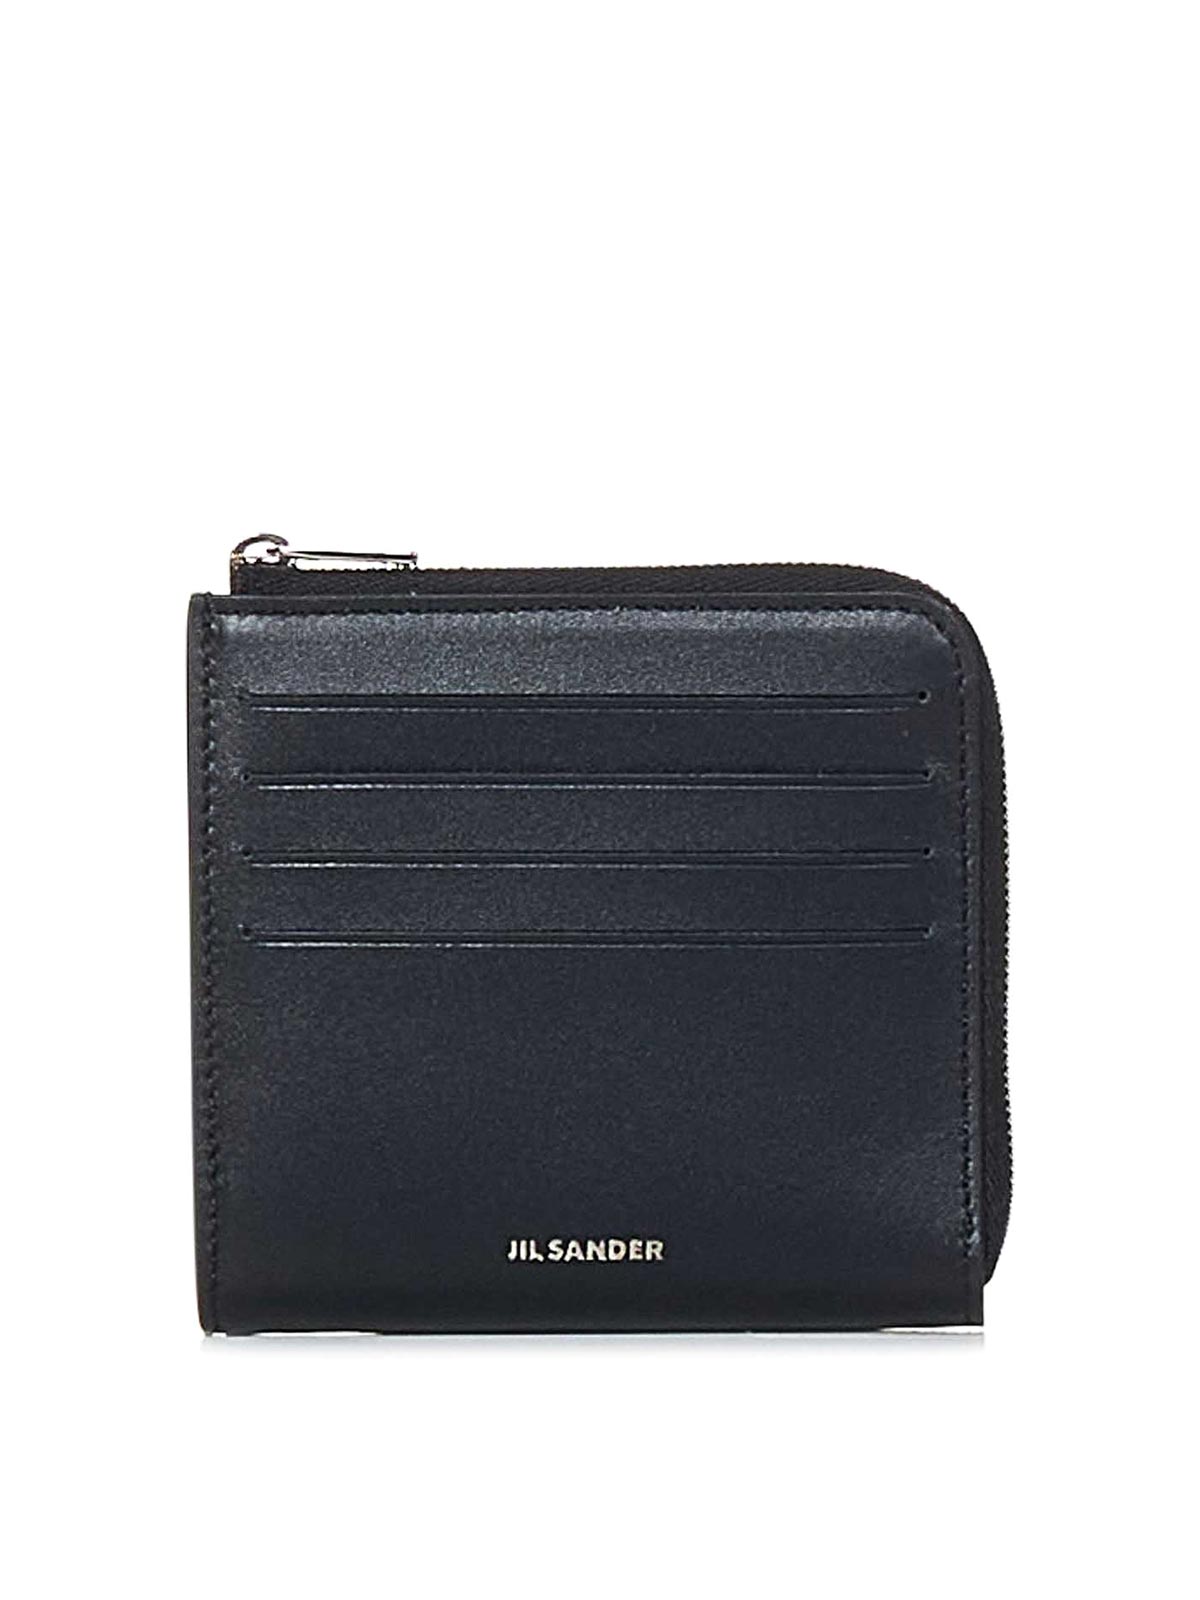 Jil Sander Embossed Wallet In Black